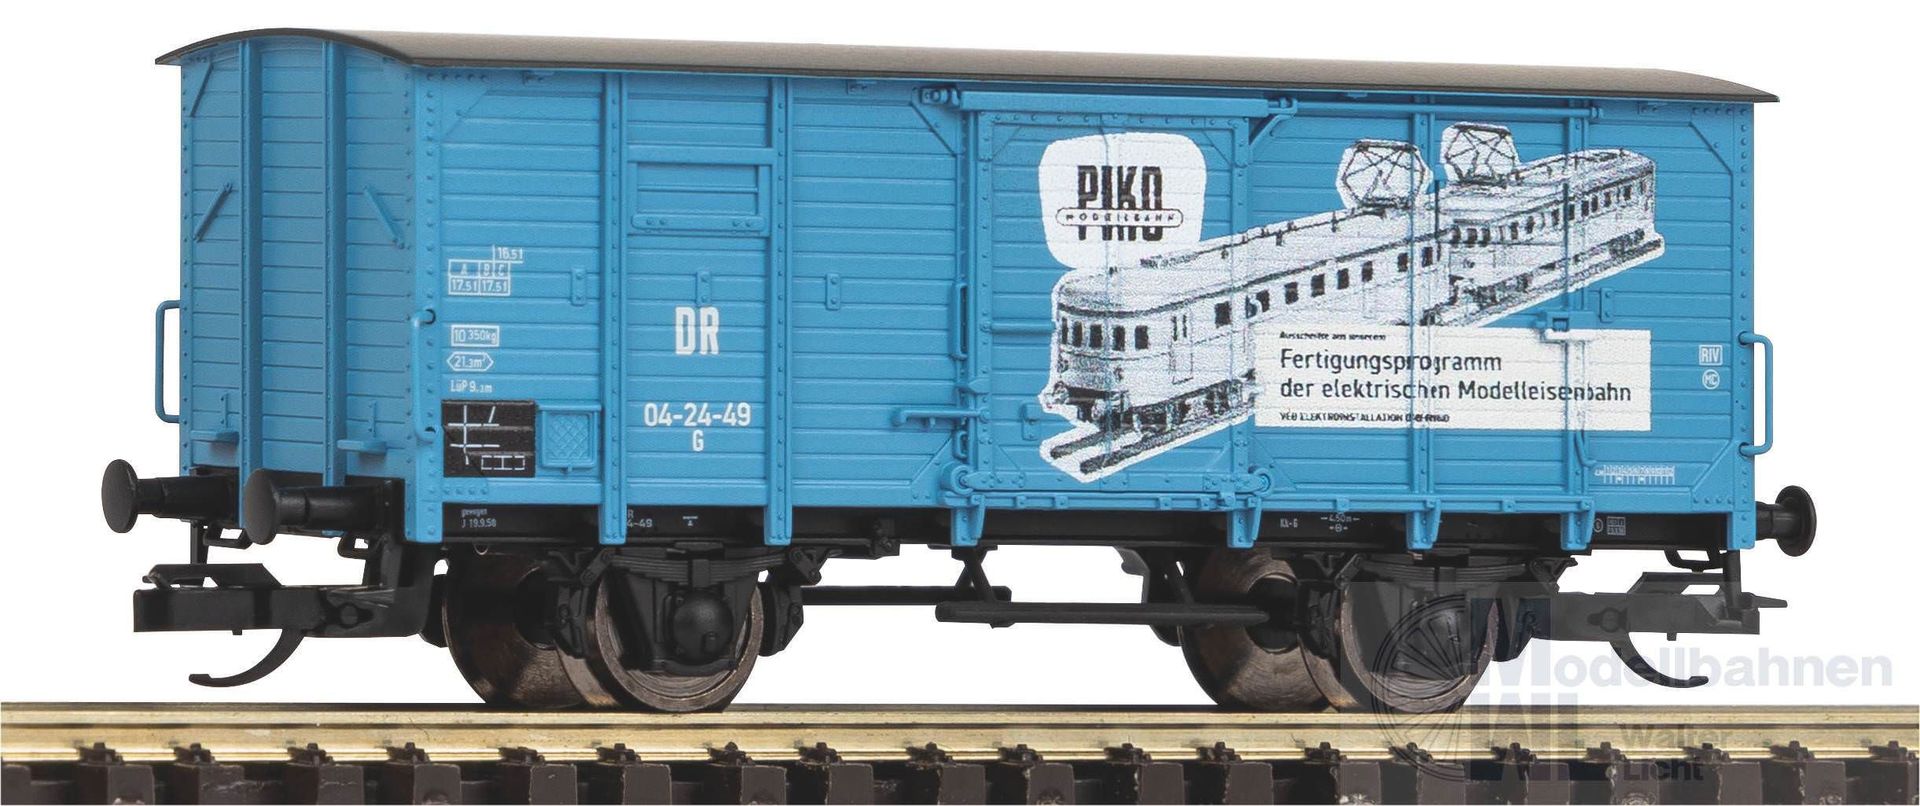 Piko 47777 - Güterwagen gedeckt DR Ep.III G02 VEB Piko TT 1:120